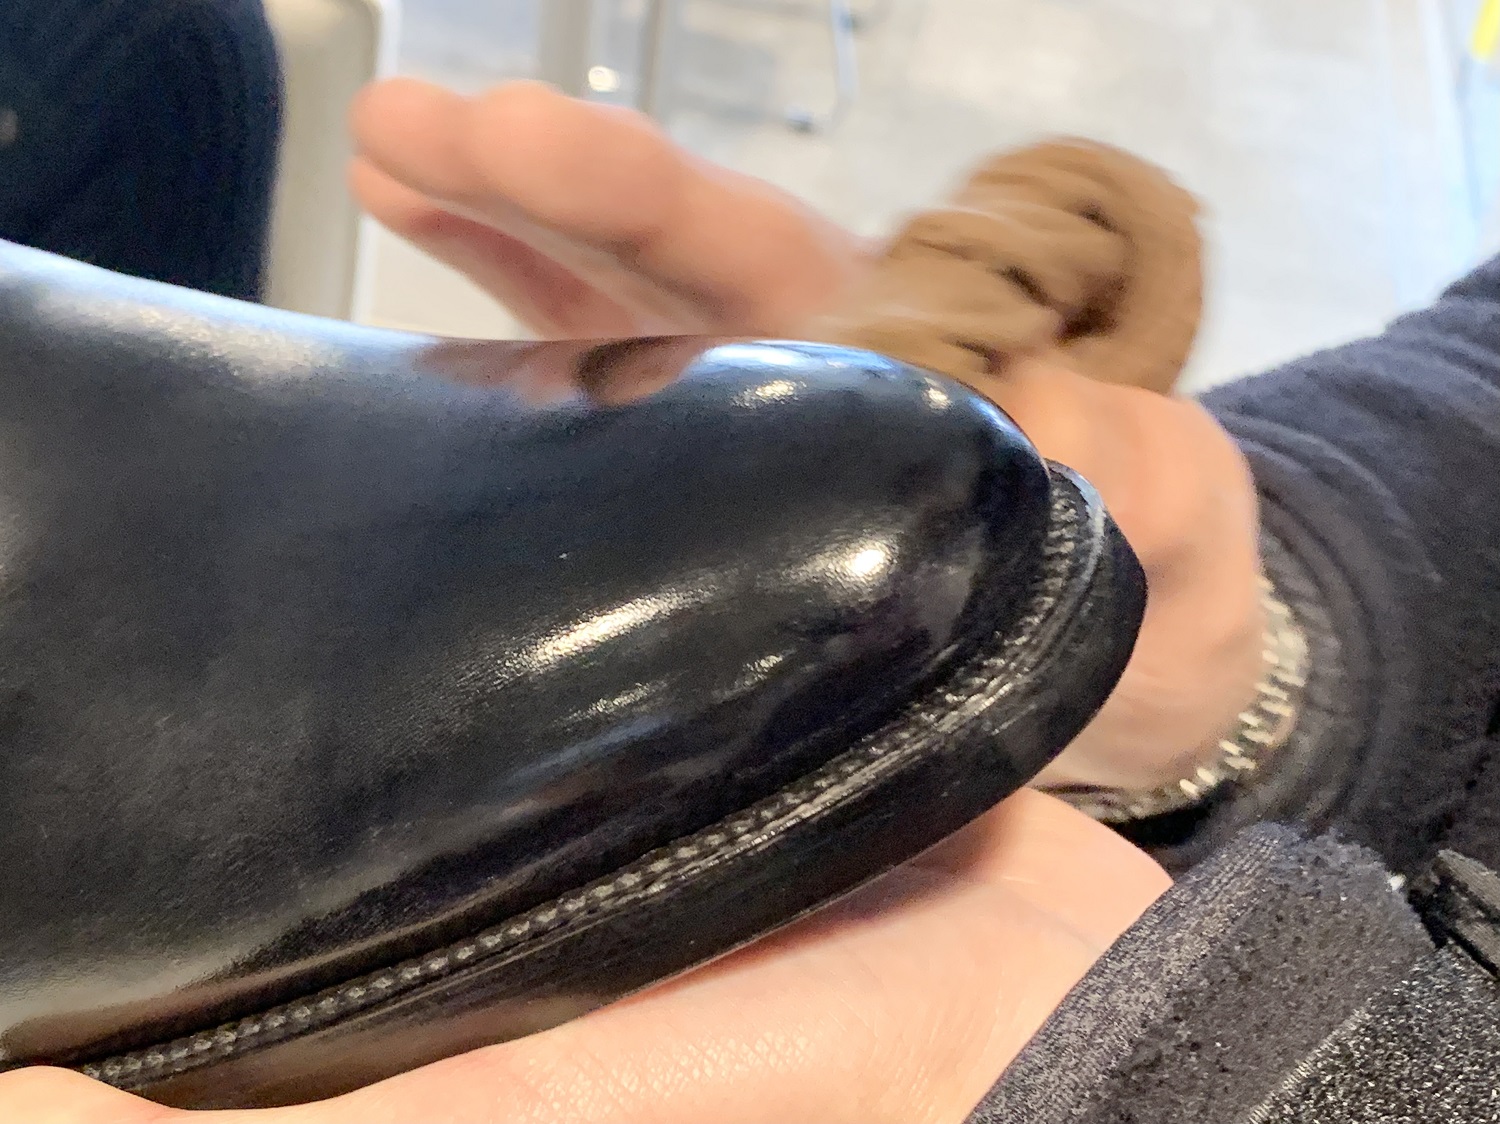 【革靴】ハイシャインワックスを使用した鏡面磨きのやり方